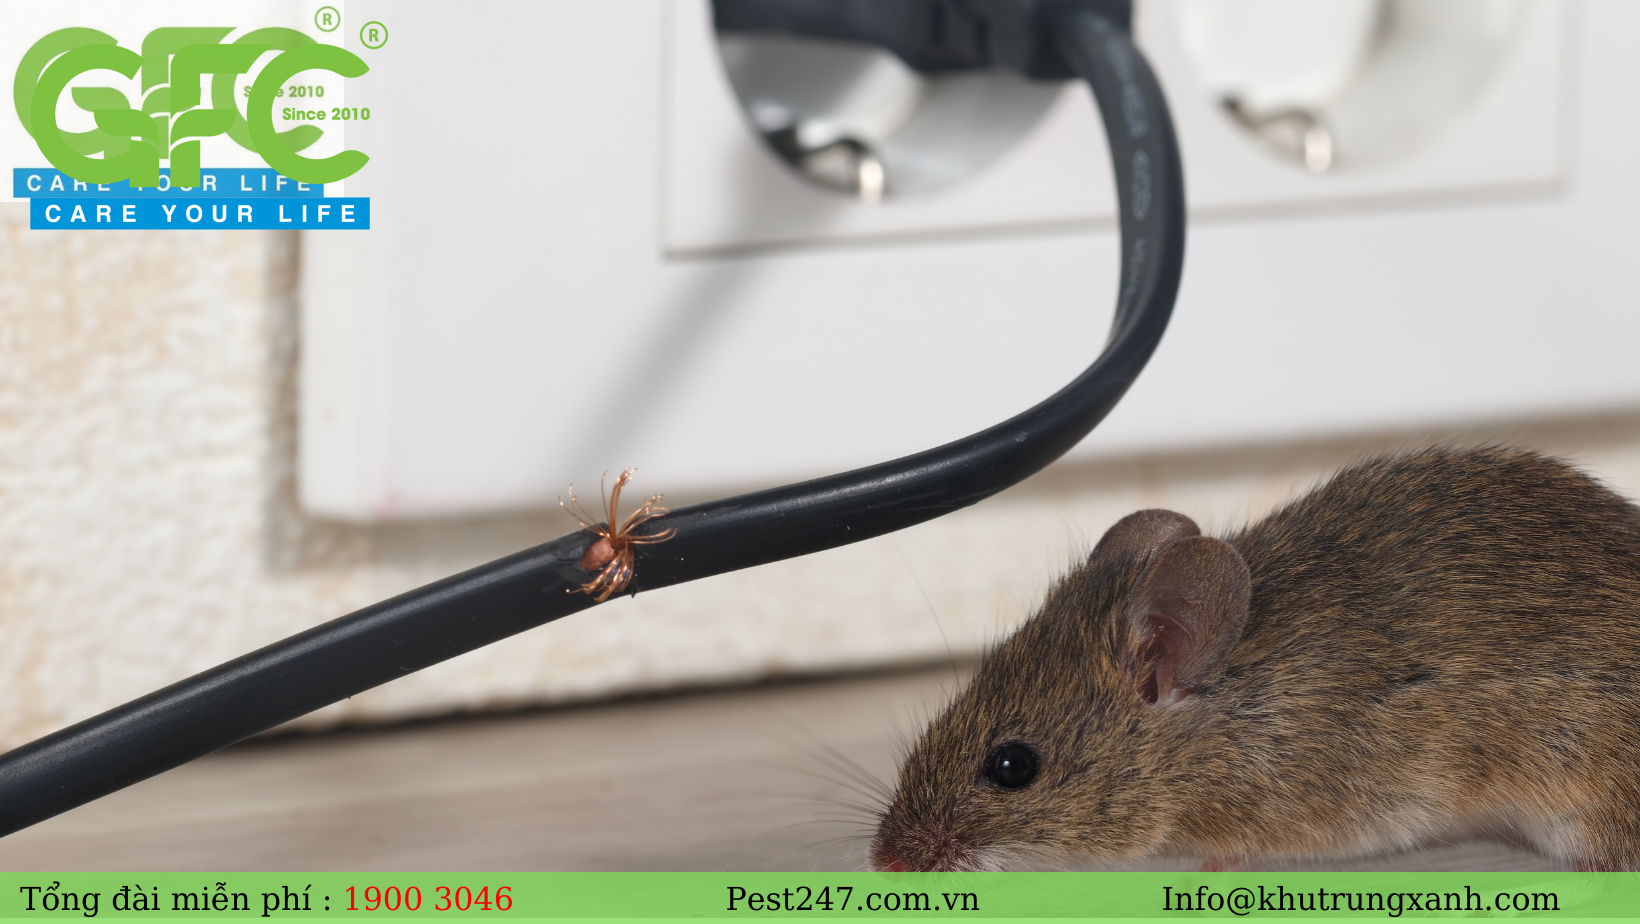 huột nhắt hay còn gọi là chuột nhà, là một loại chuột nhỏ nhưng có số lượng nhiều nhất trong chi chuột nhắt.